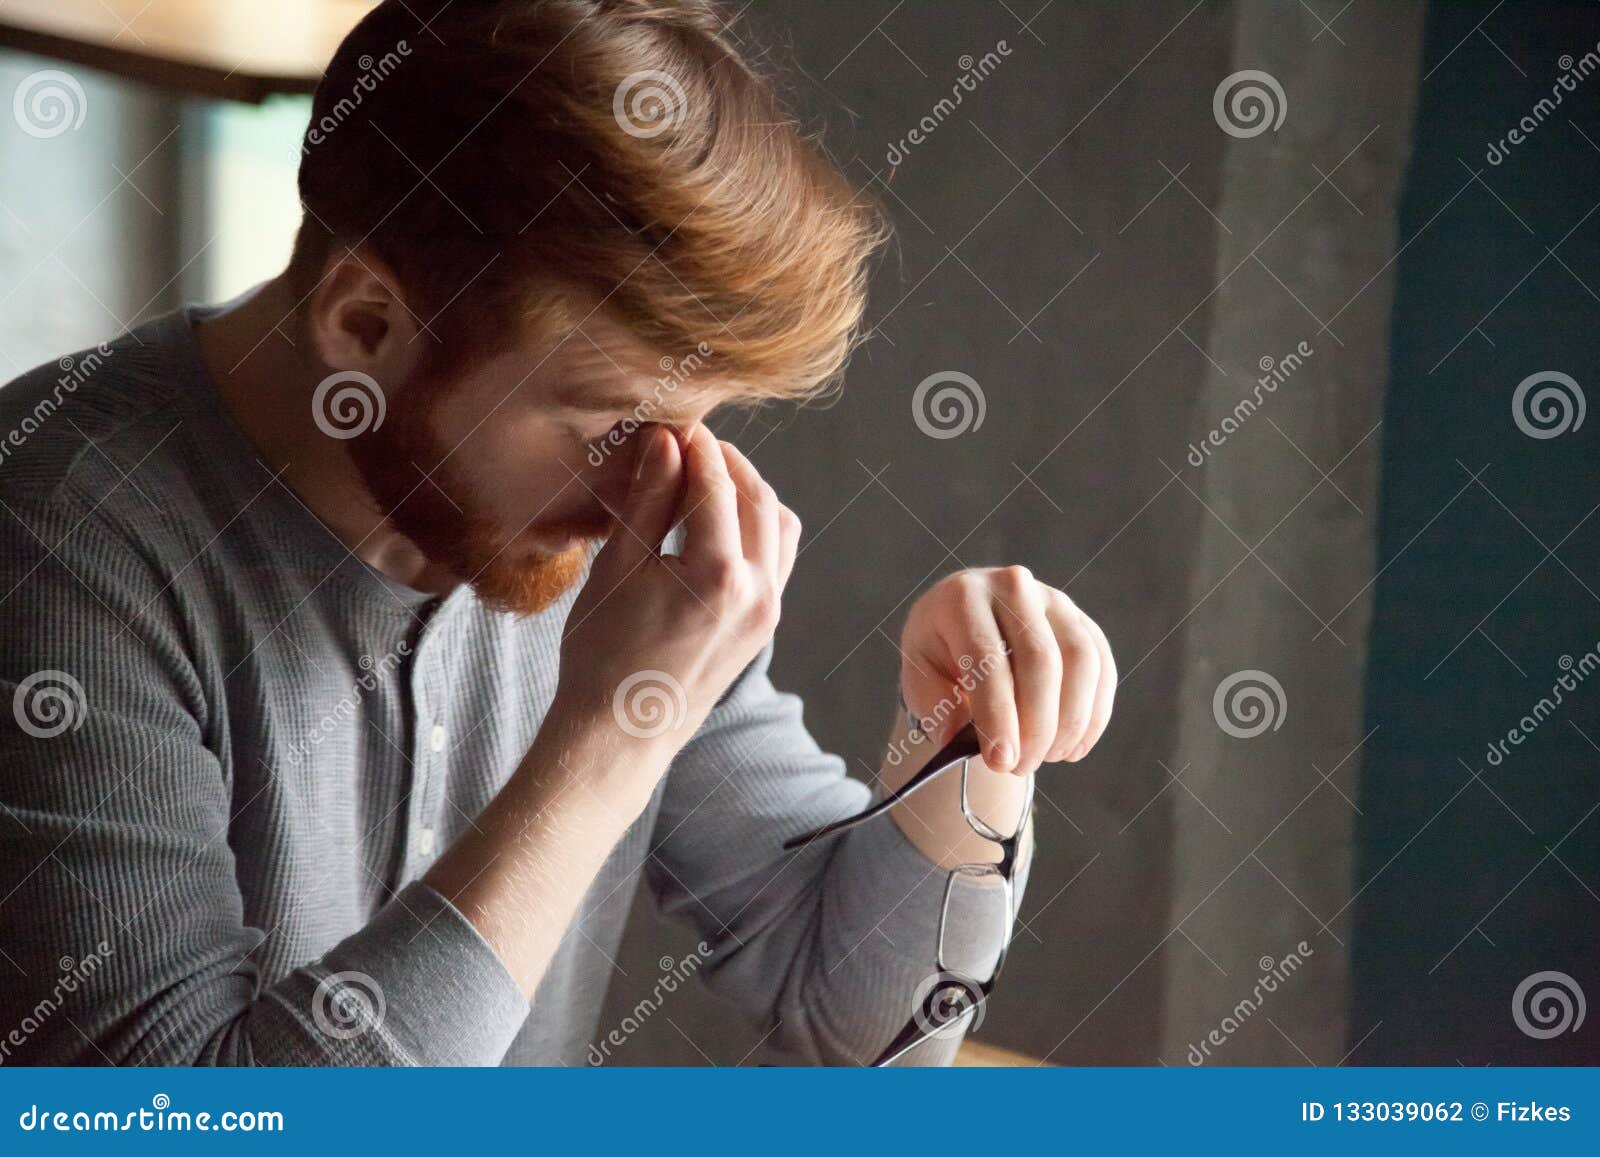 tired millennial man massaging nose feeling fatigue from work